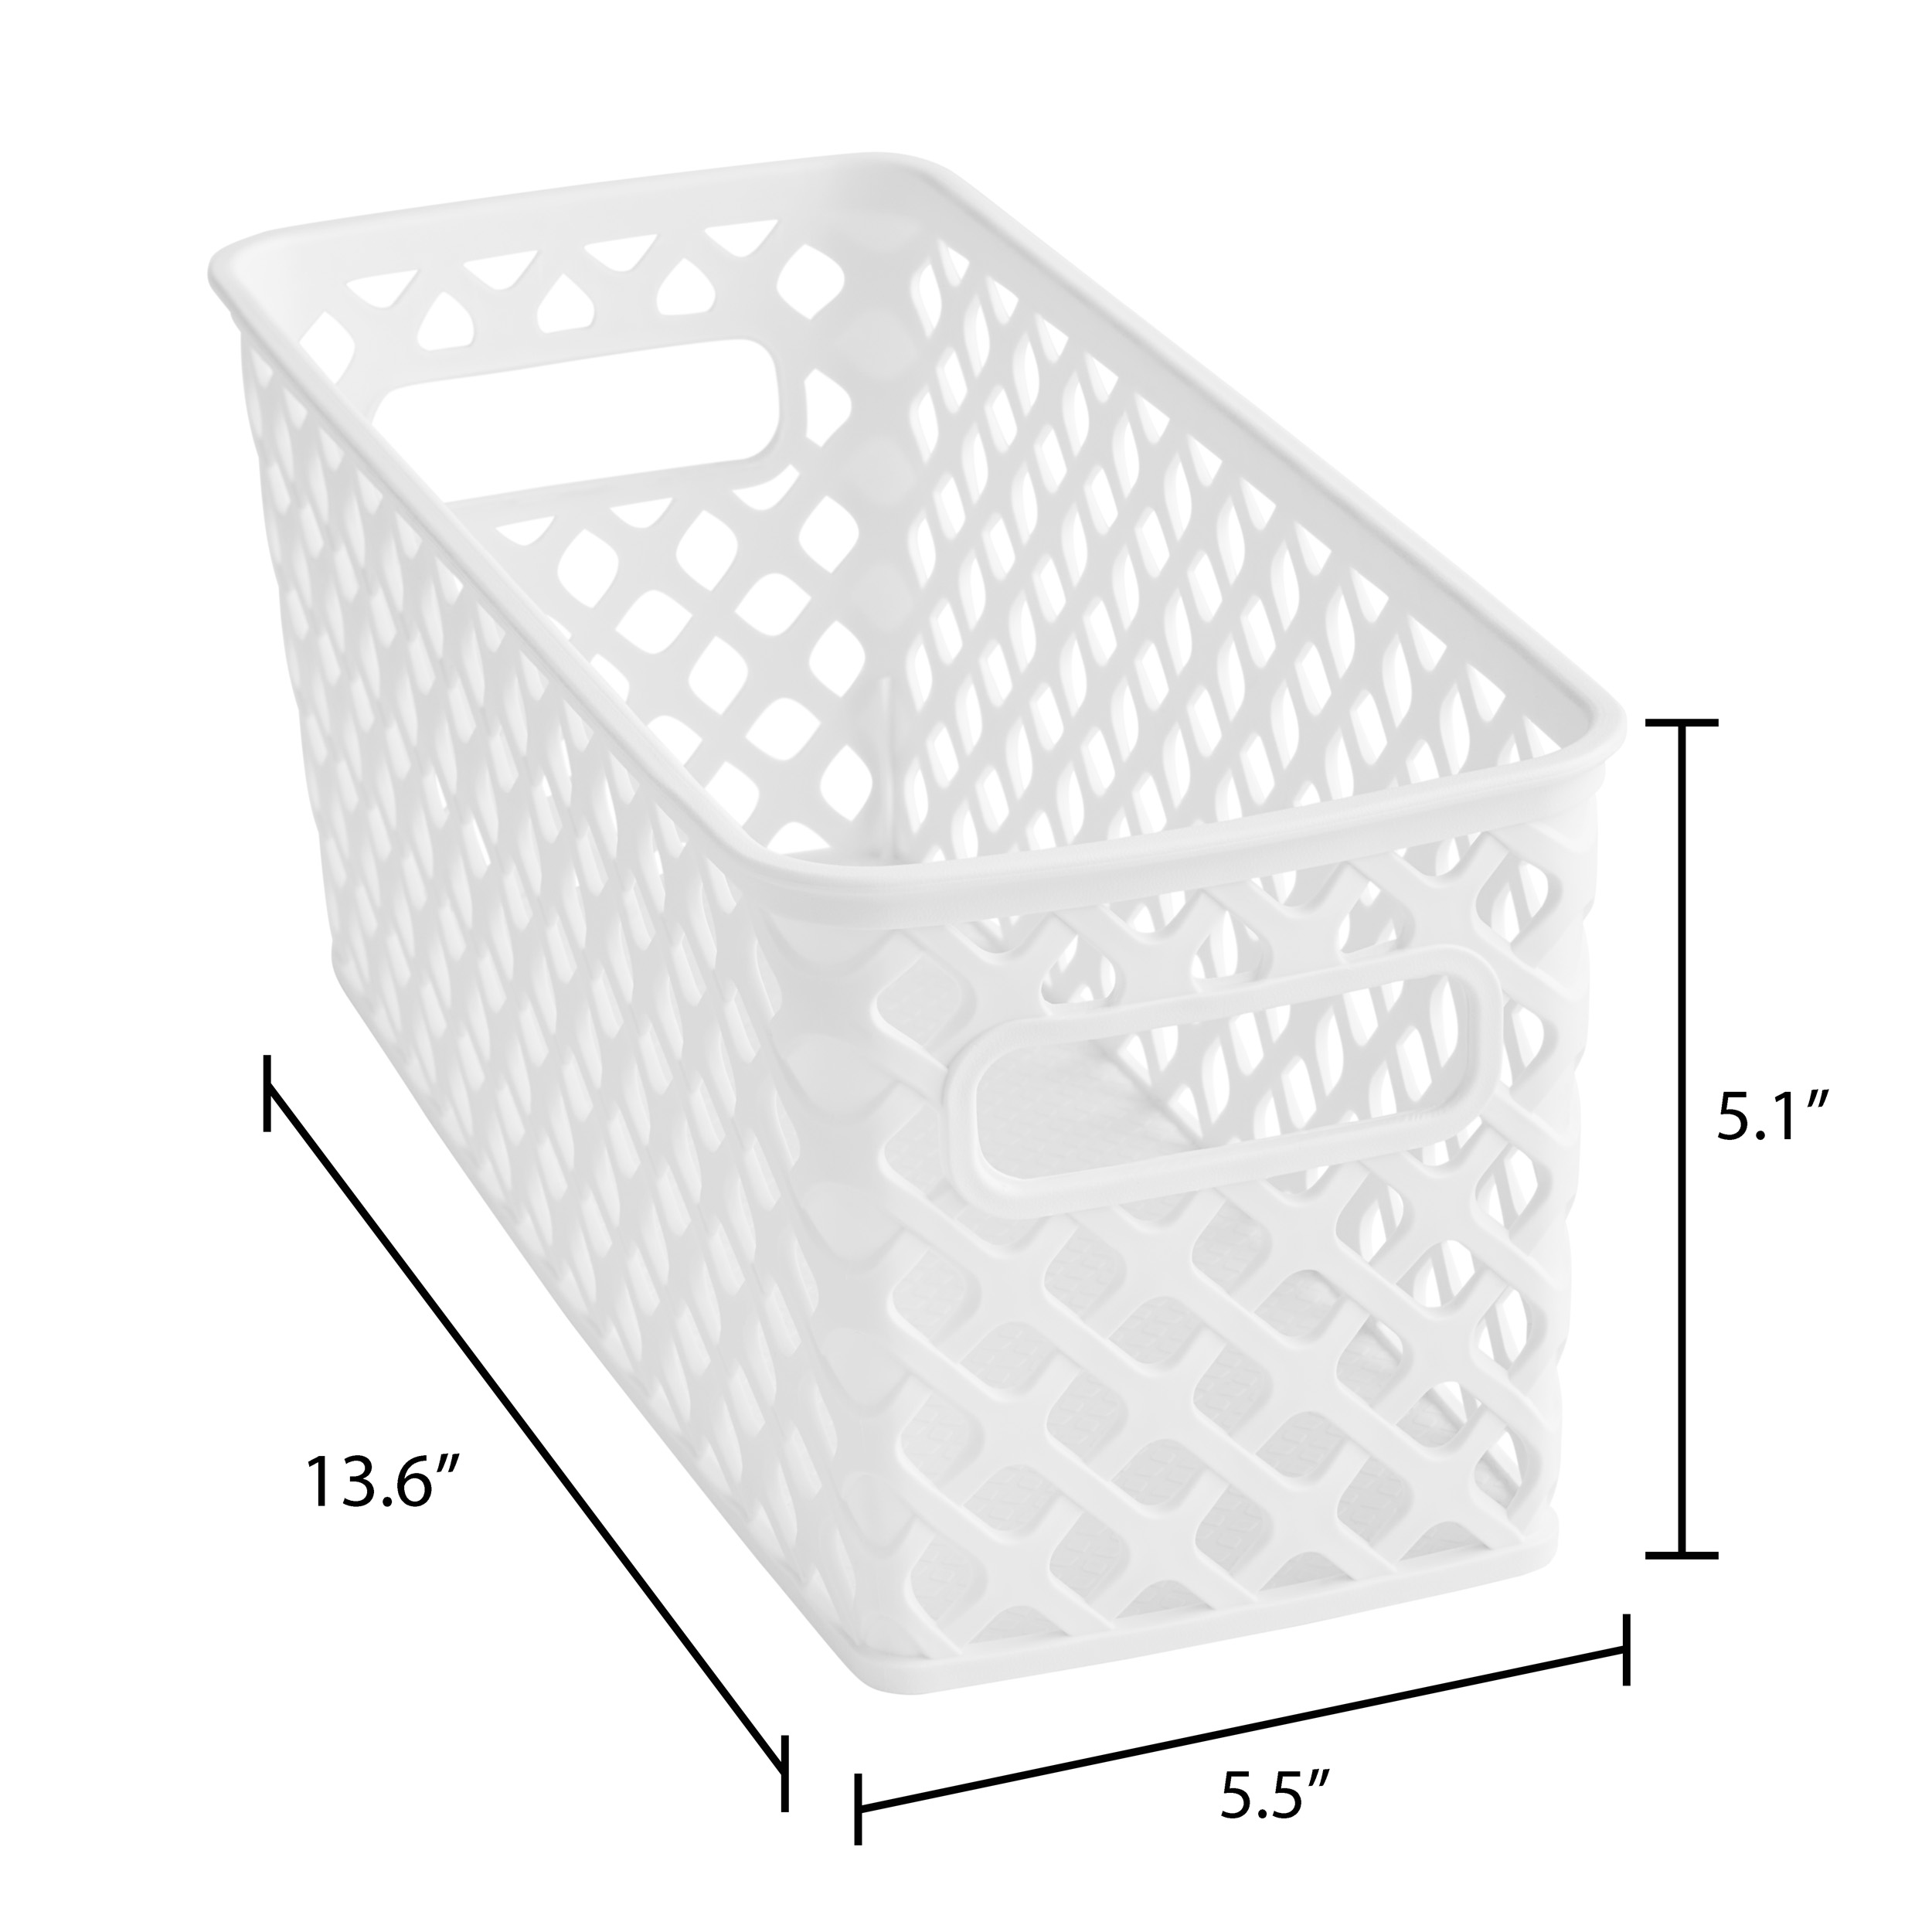 Mainstays Narrow White Decorative Storage Basket - image 5 of 5